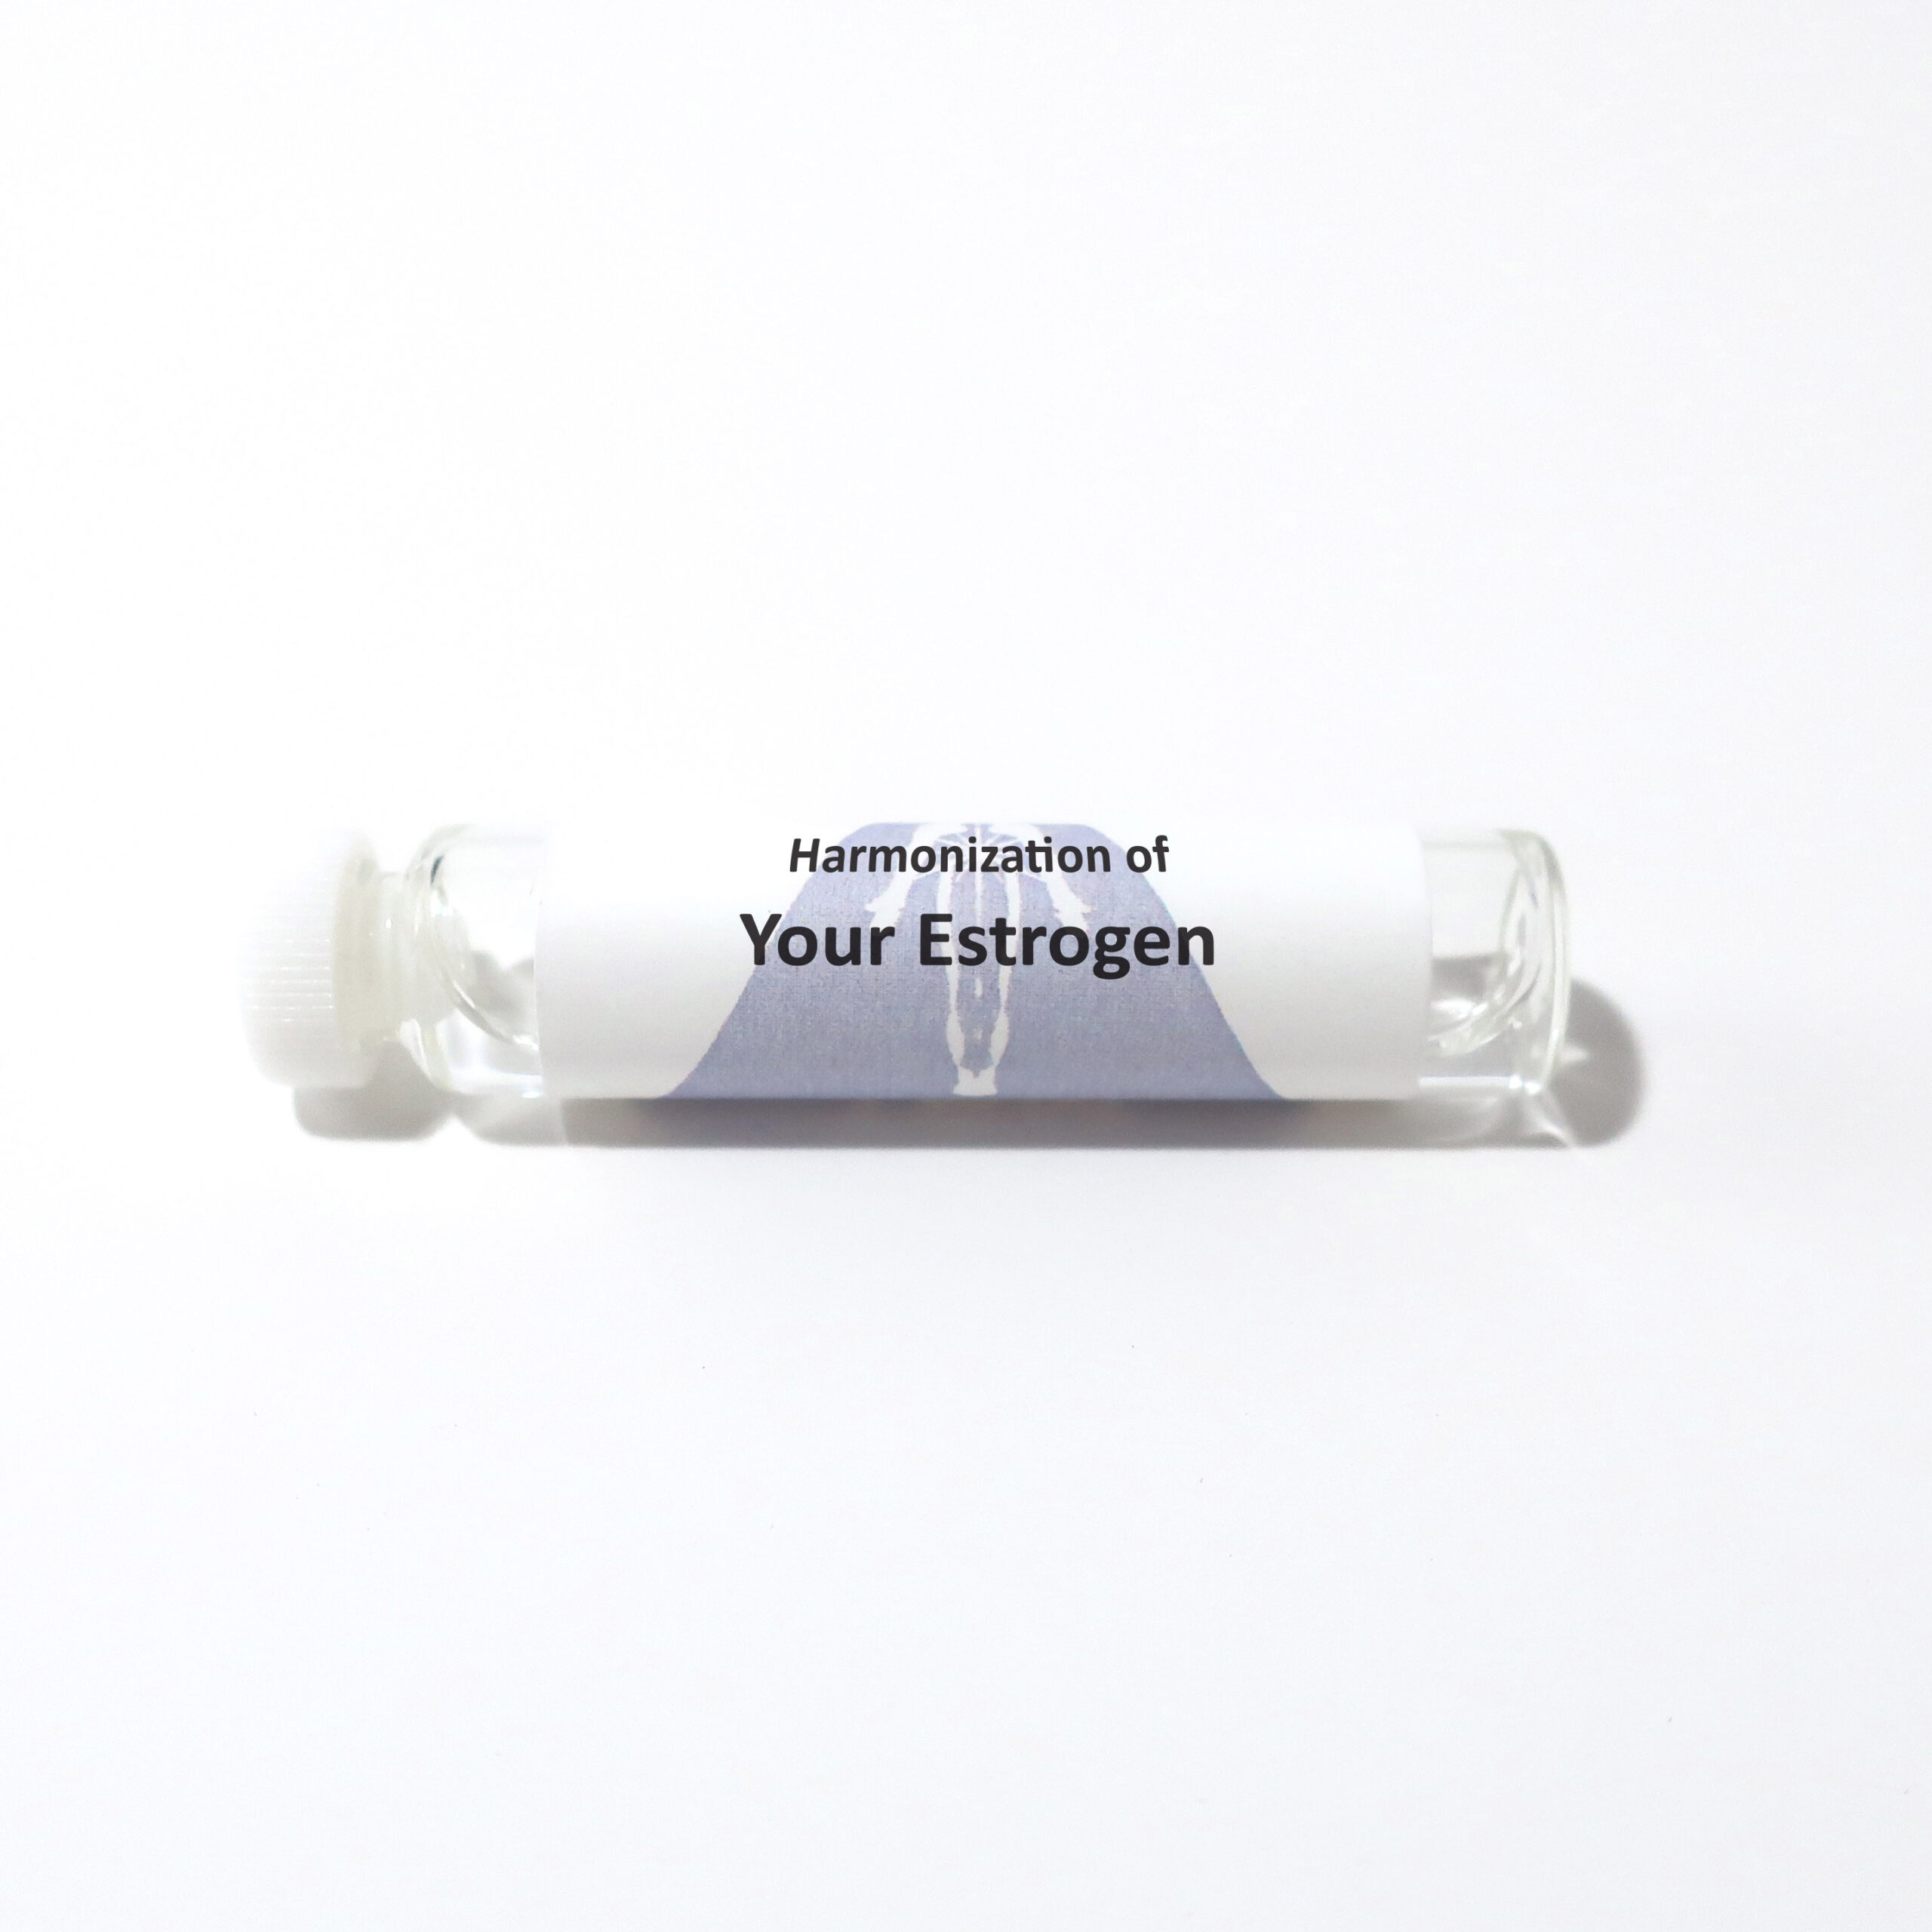 Your Estrogen